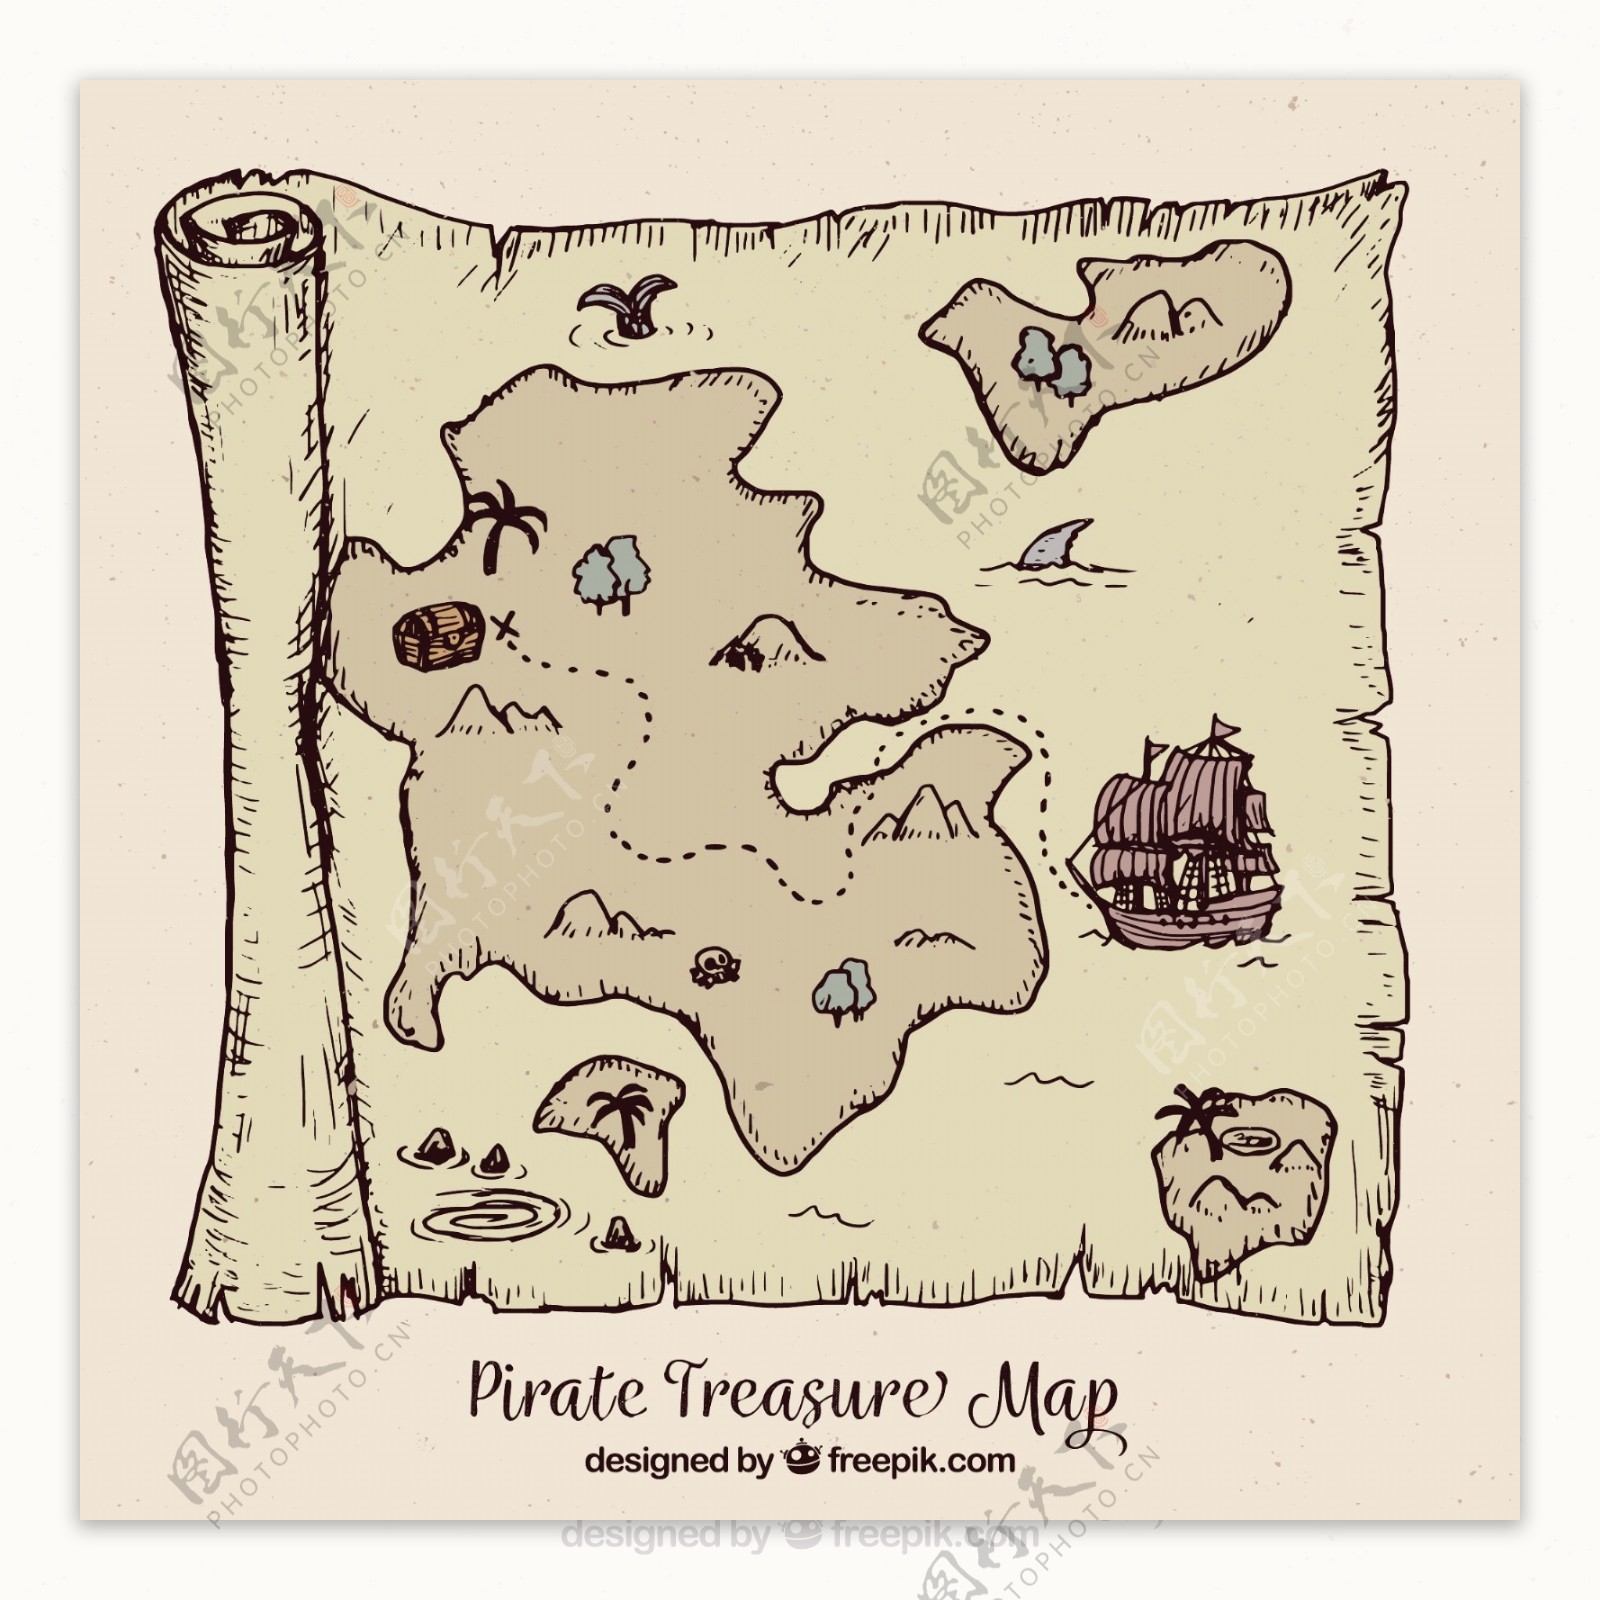 复古风格海盗宝藏地图